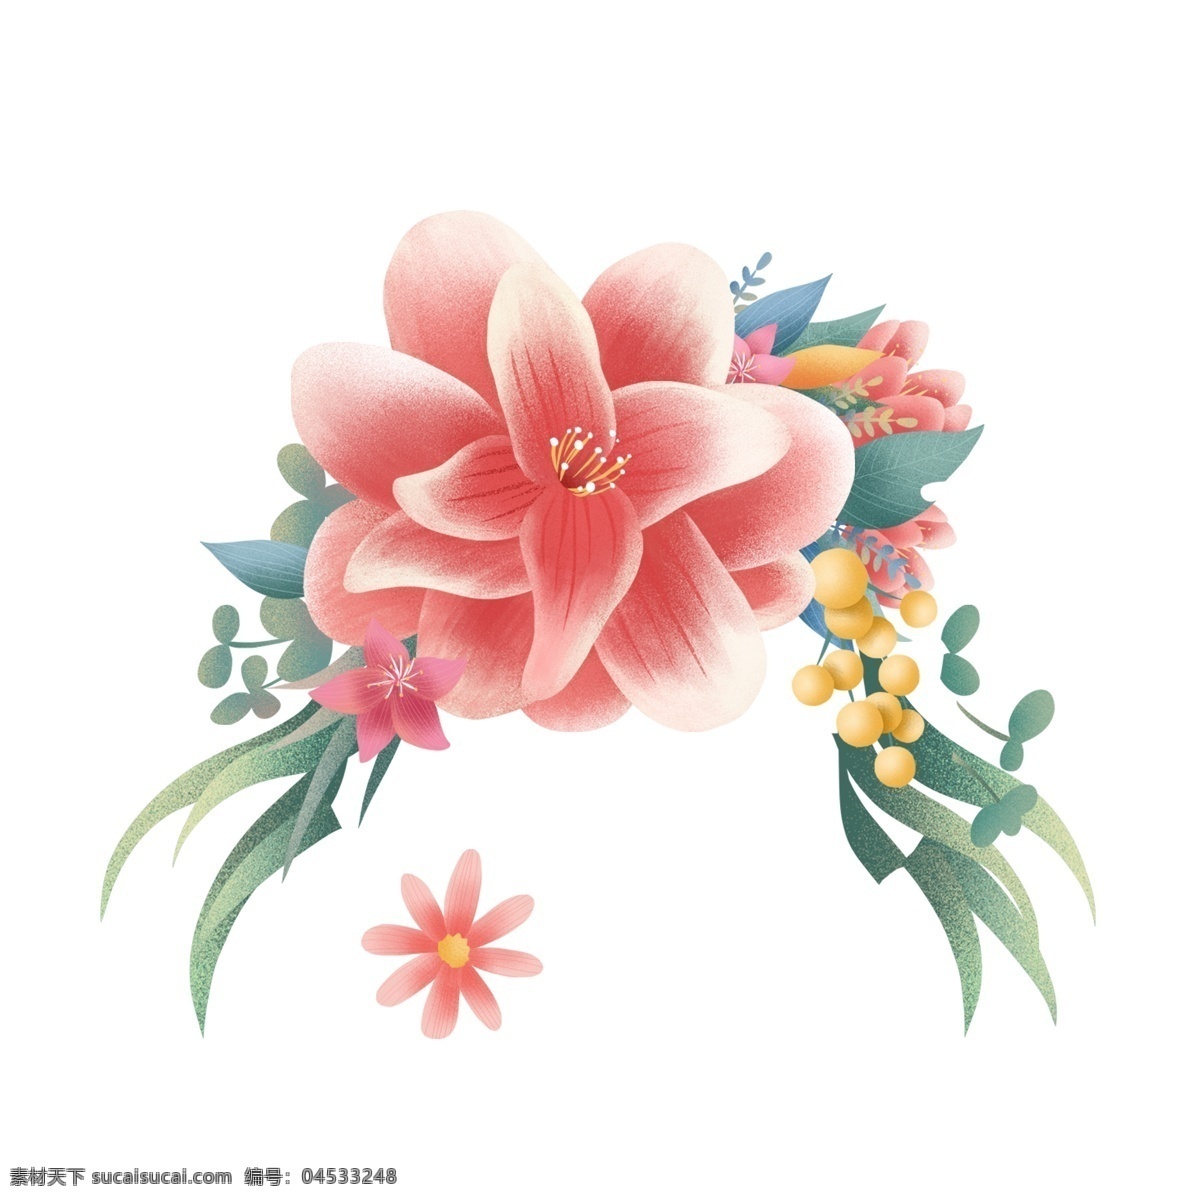 彩绘 花朵 图案 元素 花束 花丛 简约 彩绘花朵 花朵图案 手绘 创意元素 手绘元素 psd元素